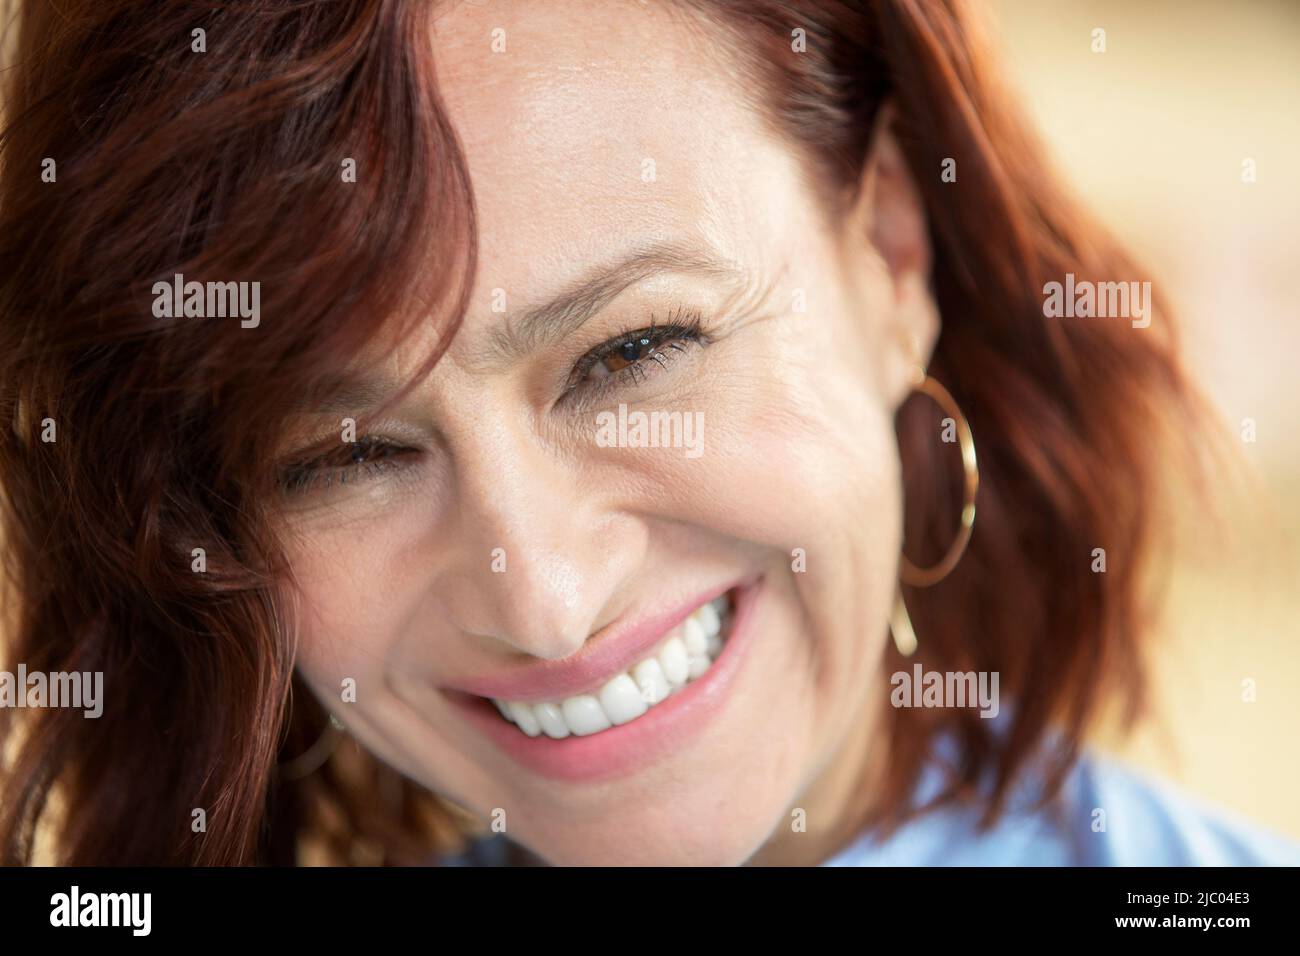 Primo piano ritratto di una donna di mezza età con redhead guardando in macchina fotografica con il mento giù. Foto Stock